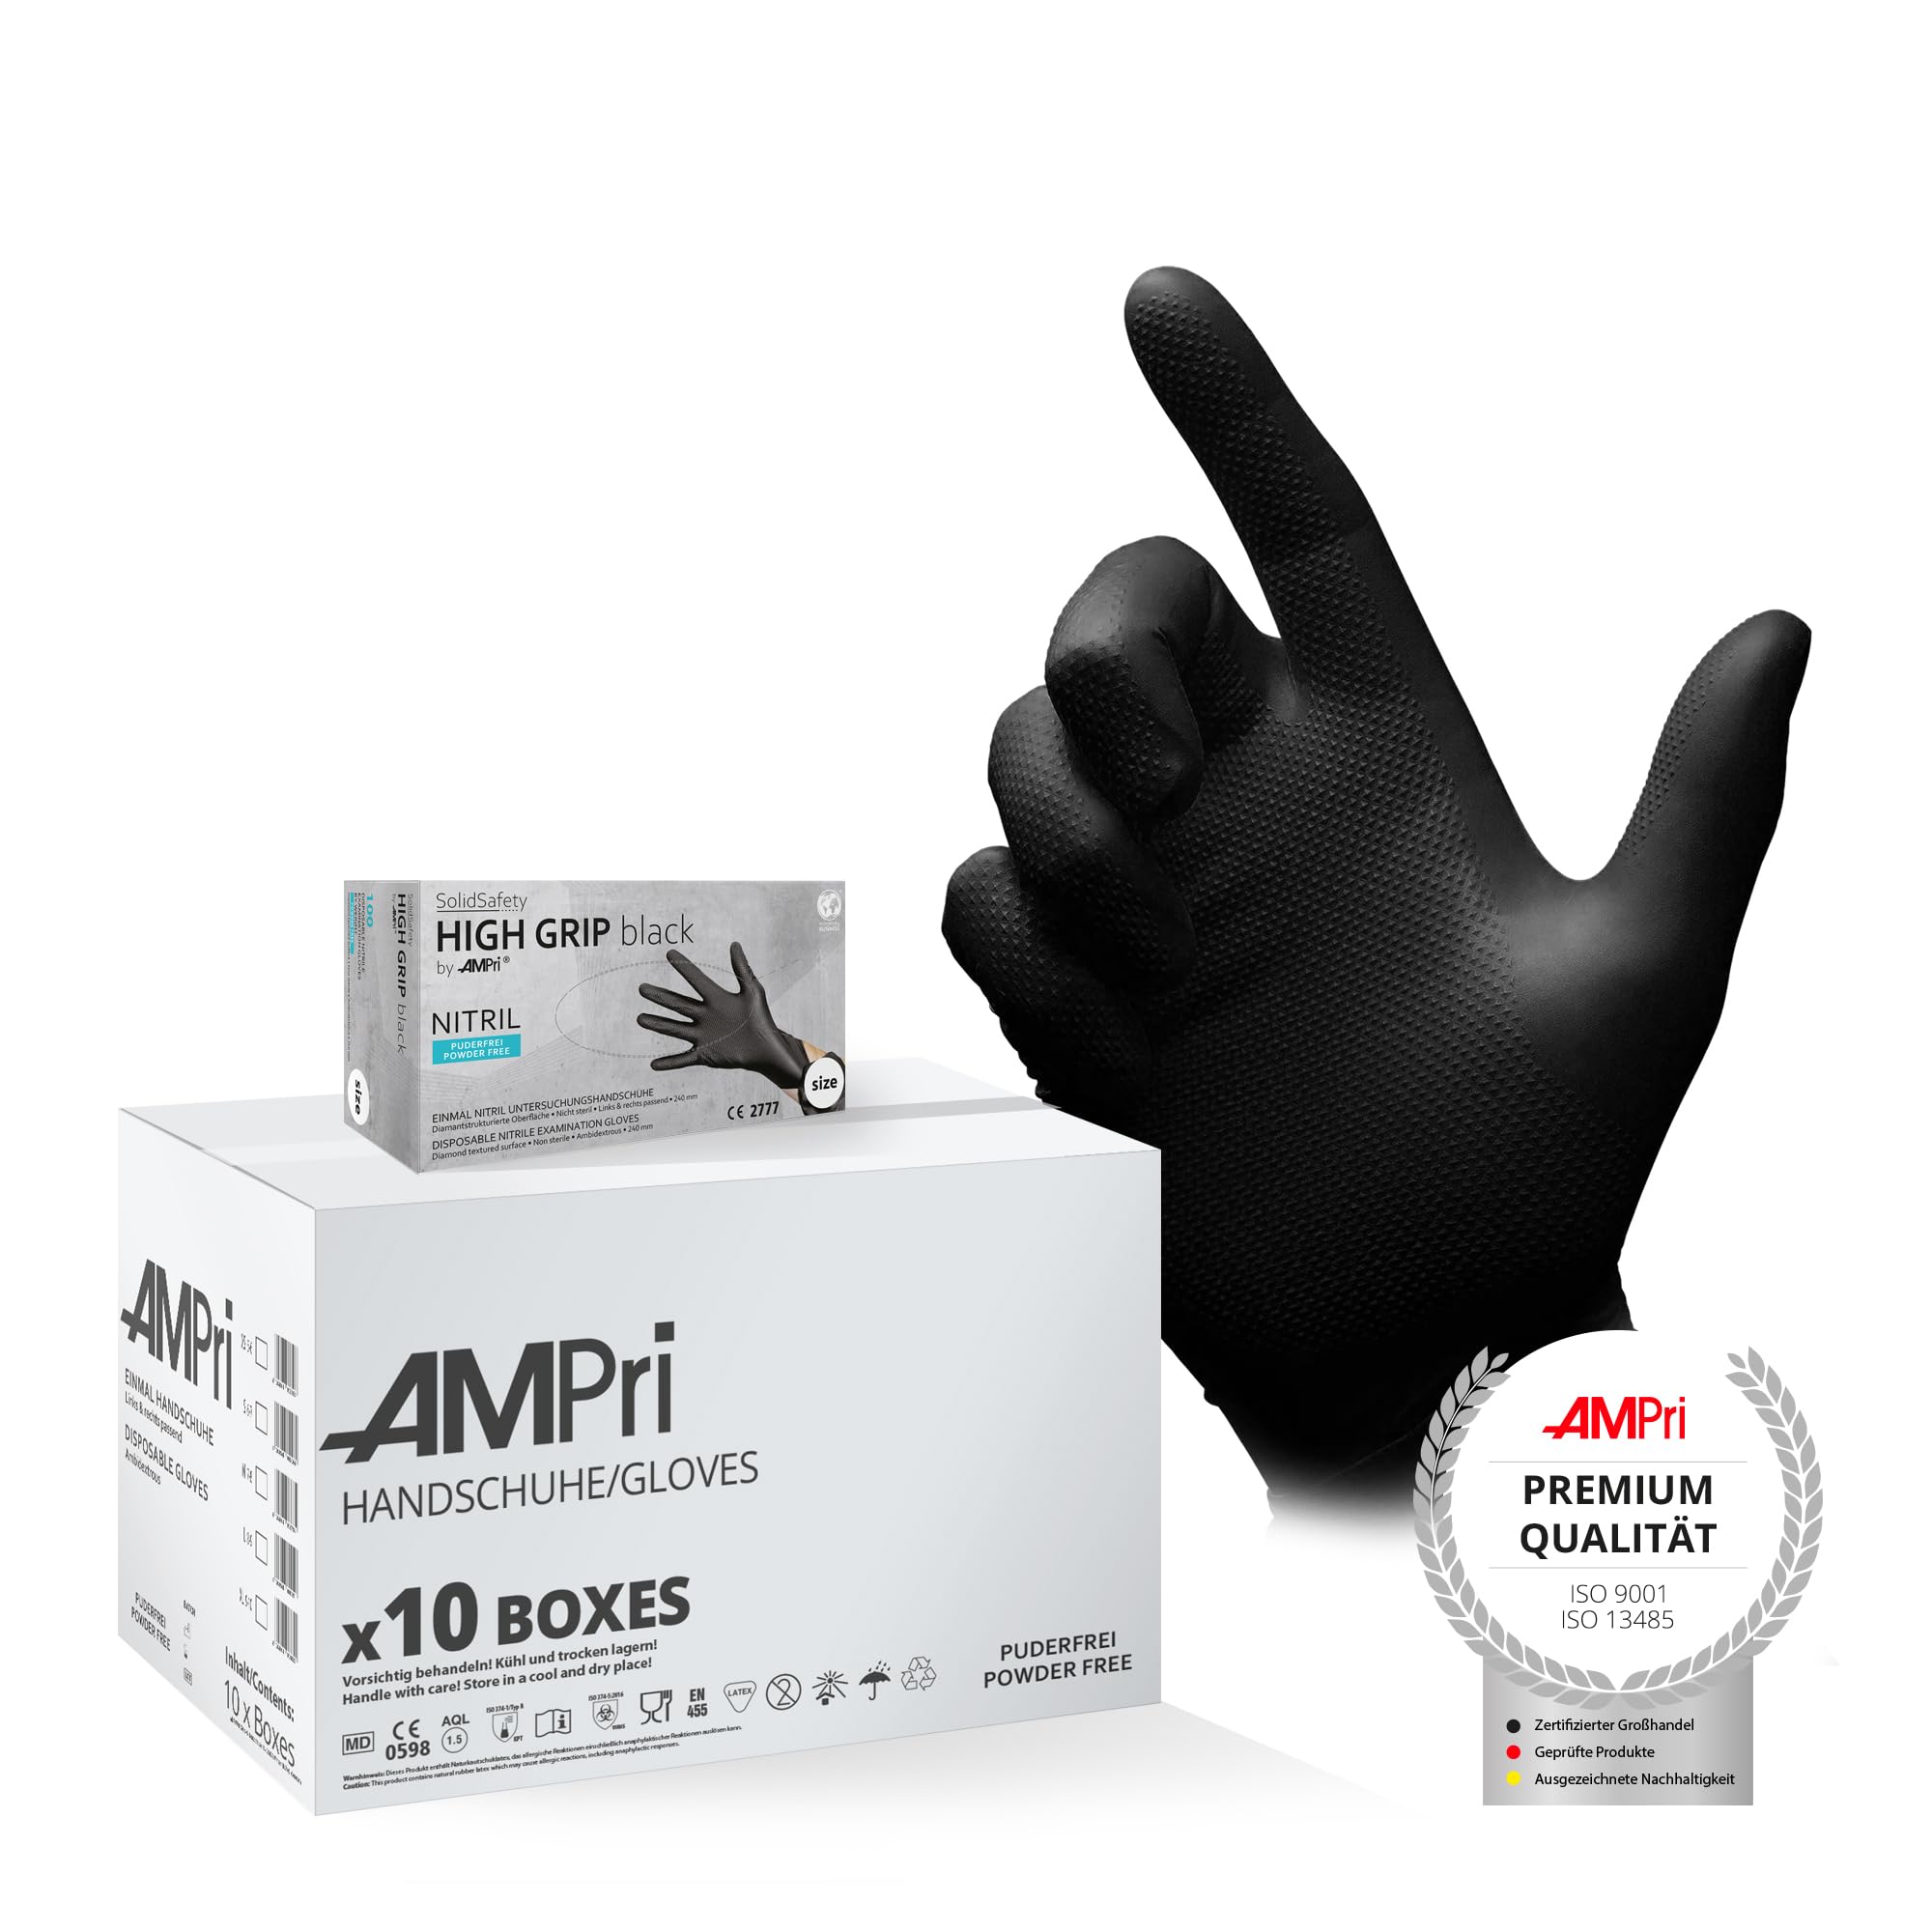 AMPri High Grip Einmalhandschuh aus Nitril, 10 Box a 100 Stk, Größe M, schwarz, SolidSafety: extra griffiger und chemikalienbeständiger Arbeitsschutzhandschuh in den Größen S, M, L, XL, XXL